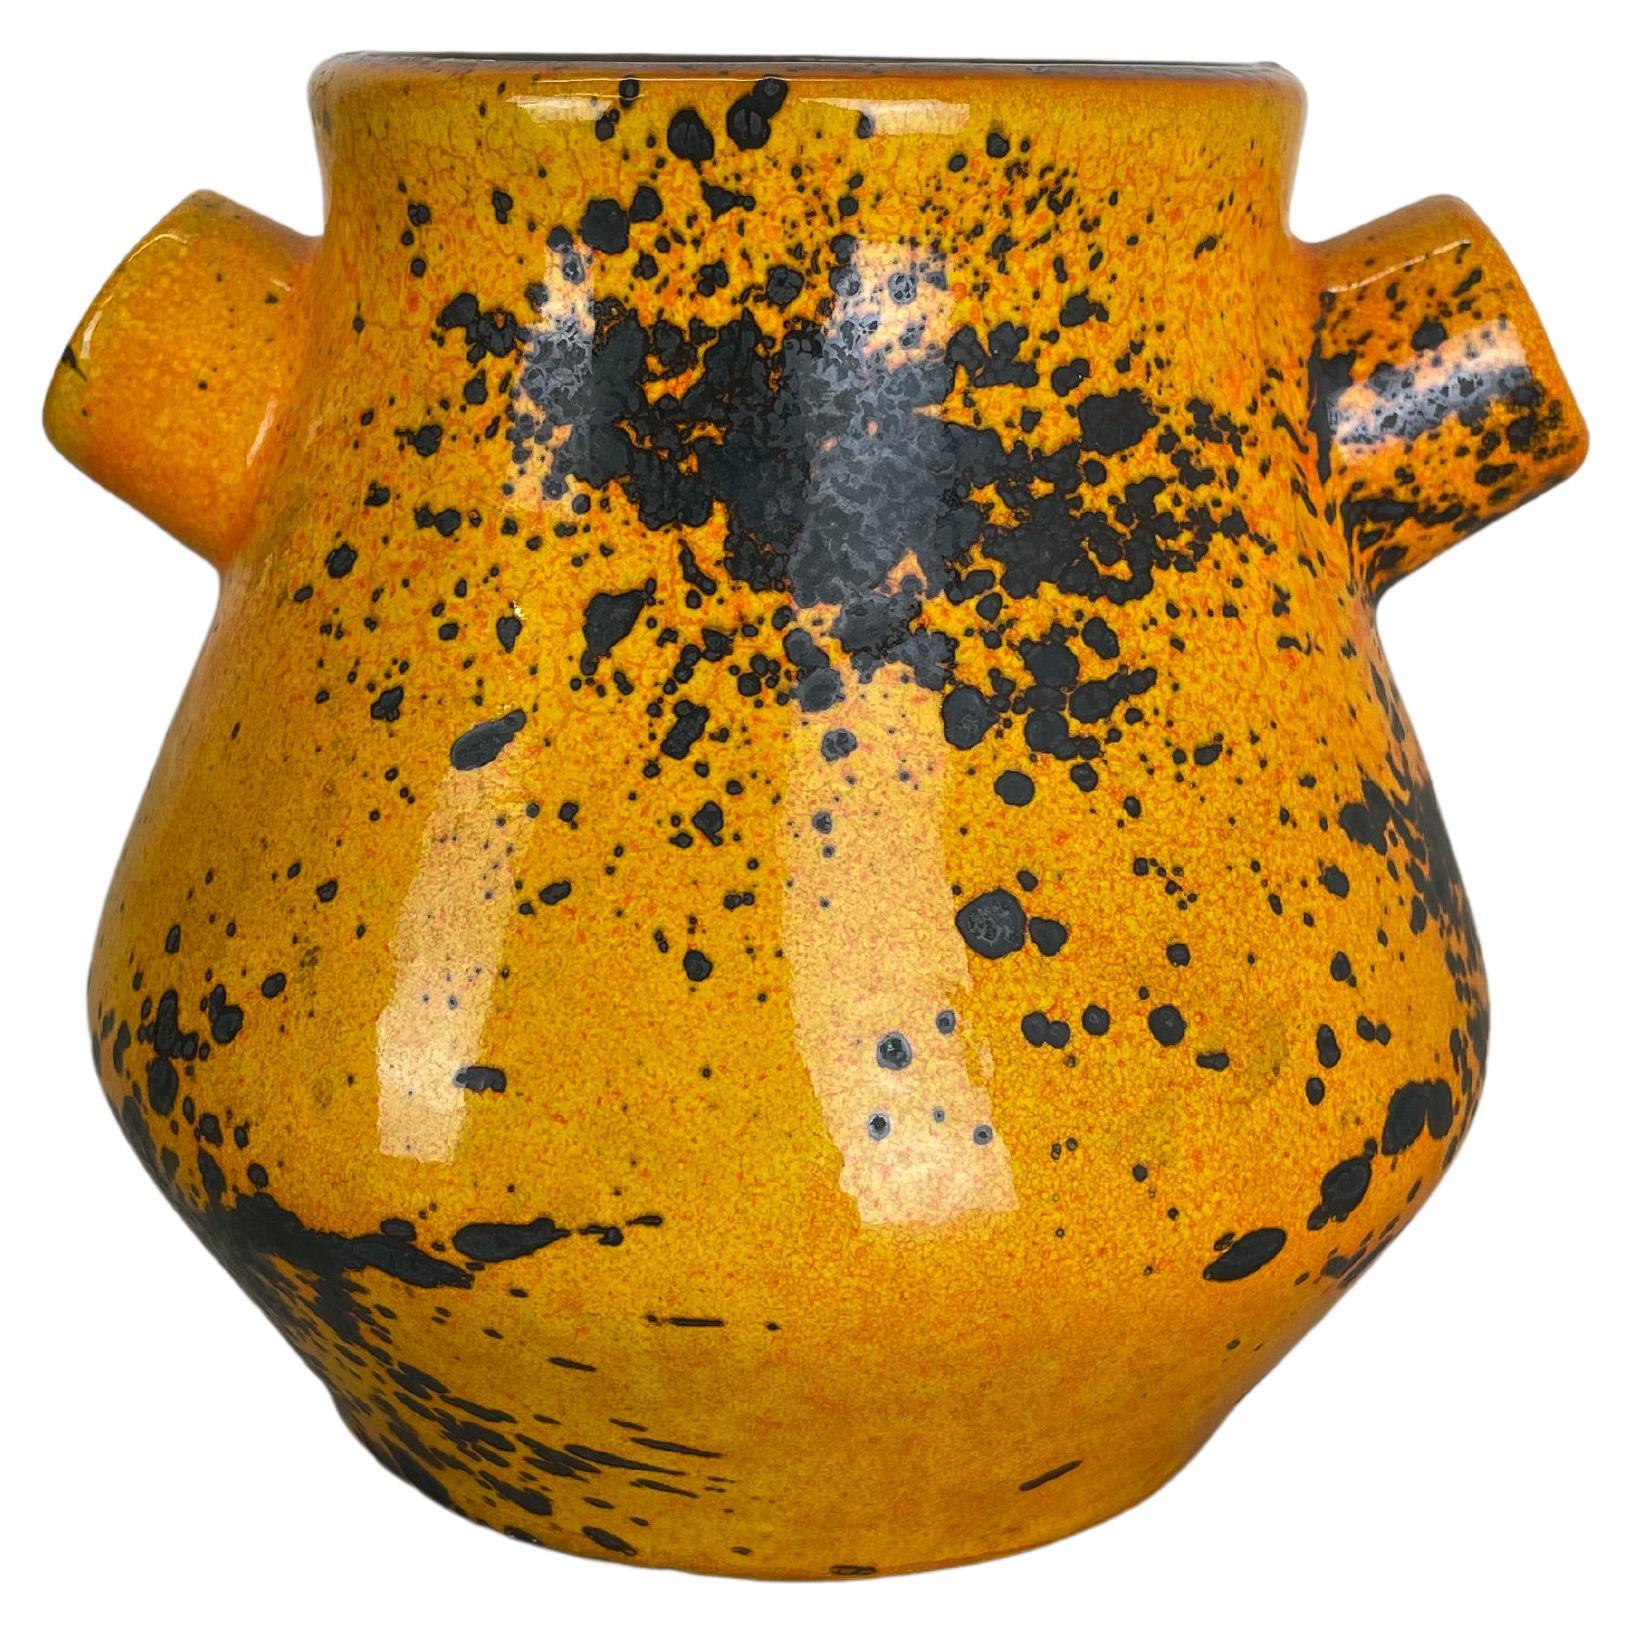 Original Orange Ceramic Studio Pottery Vase by Marei Ceramics, Germany 1970s